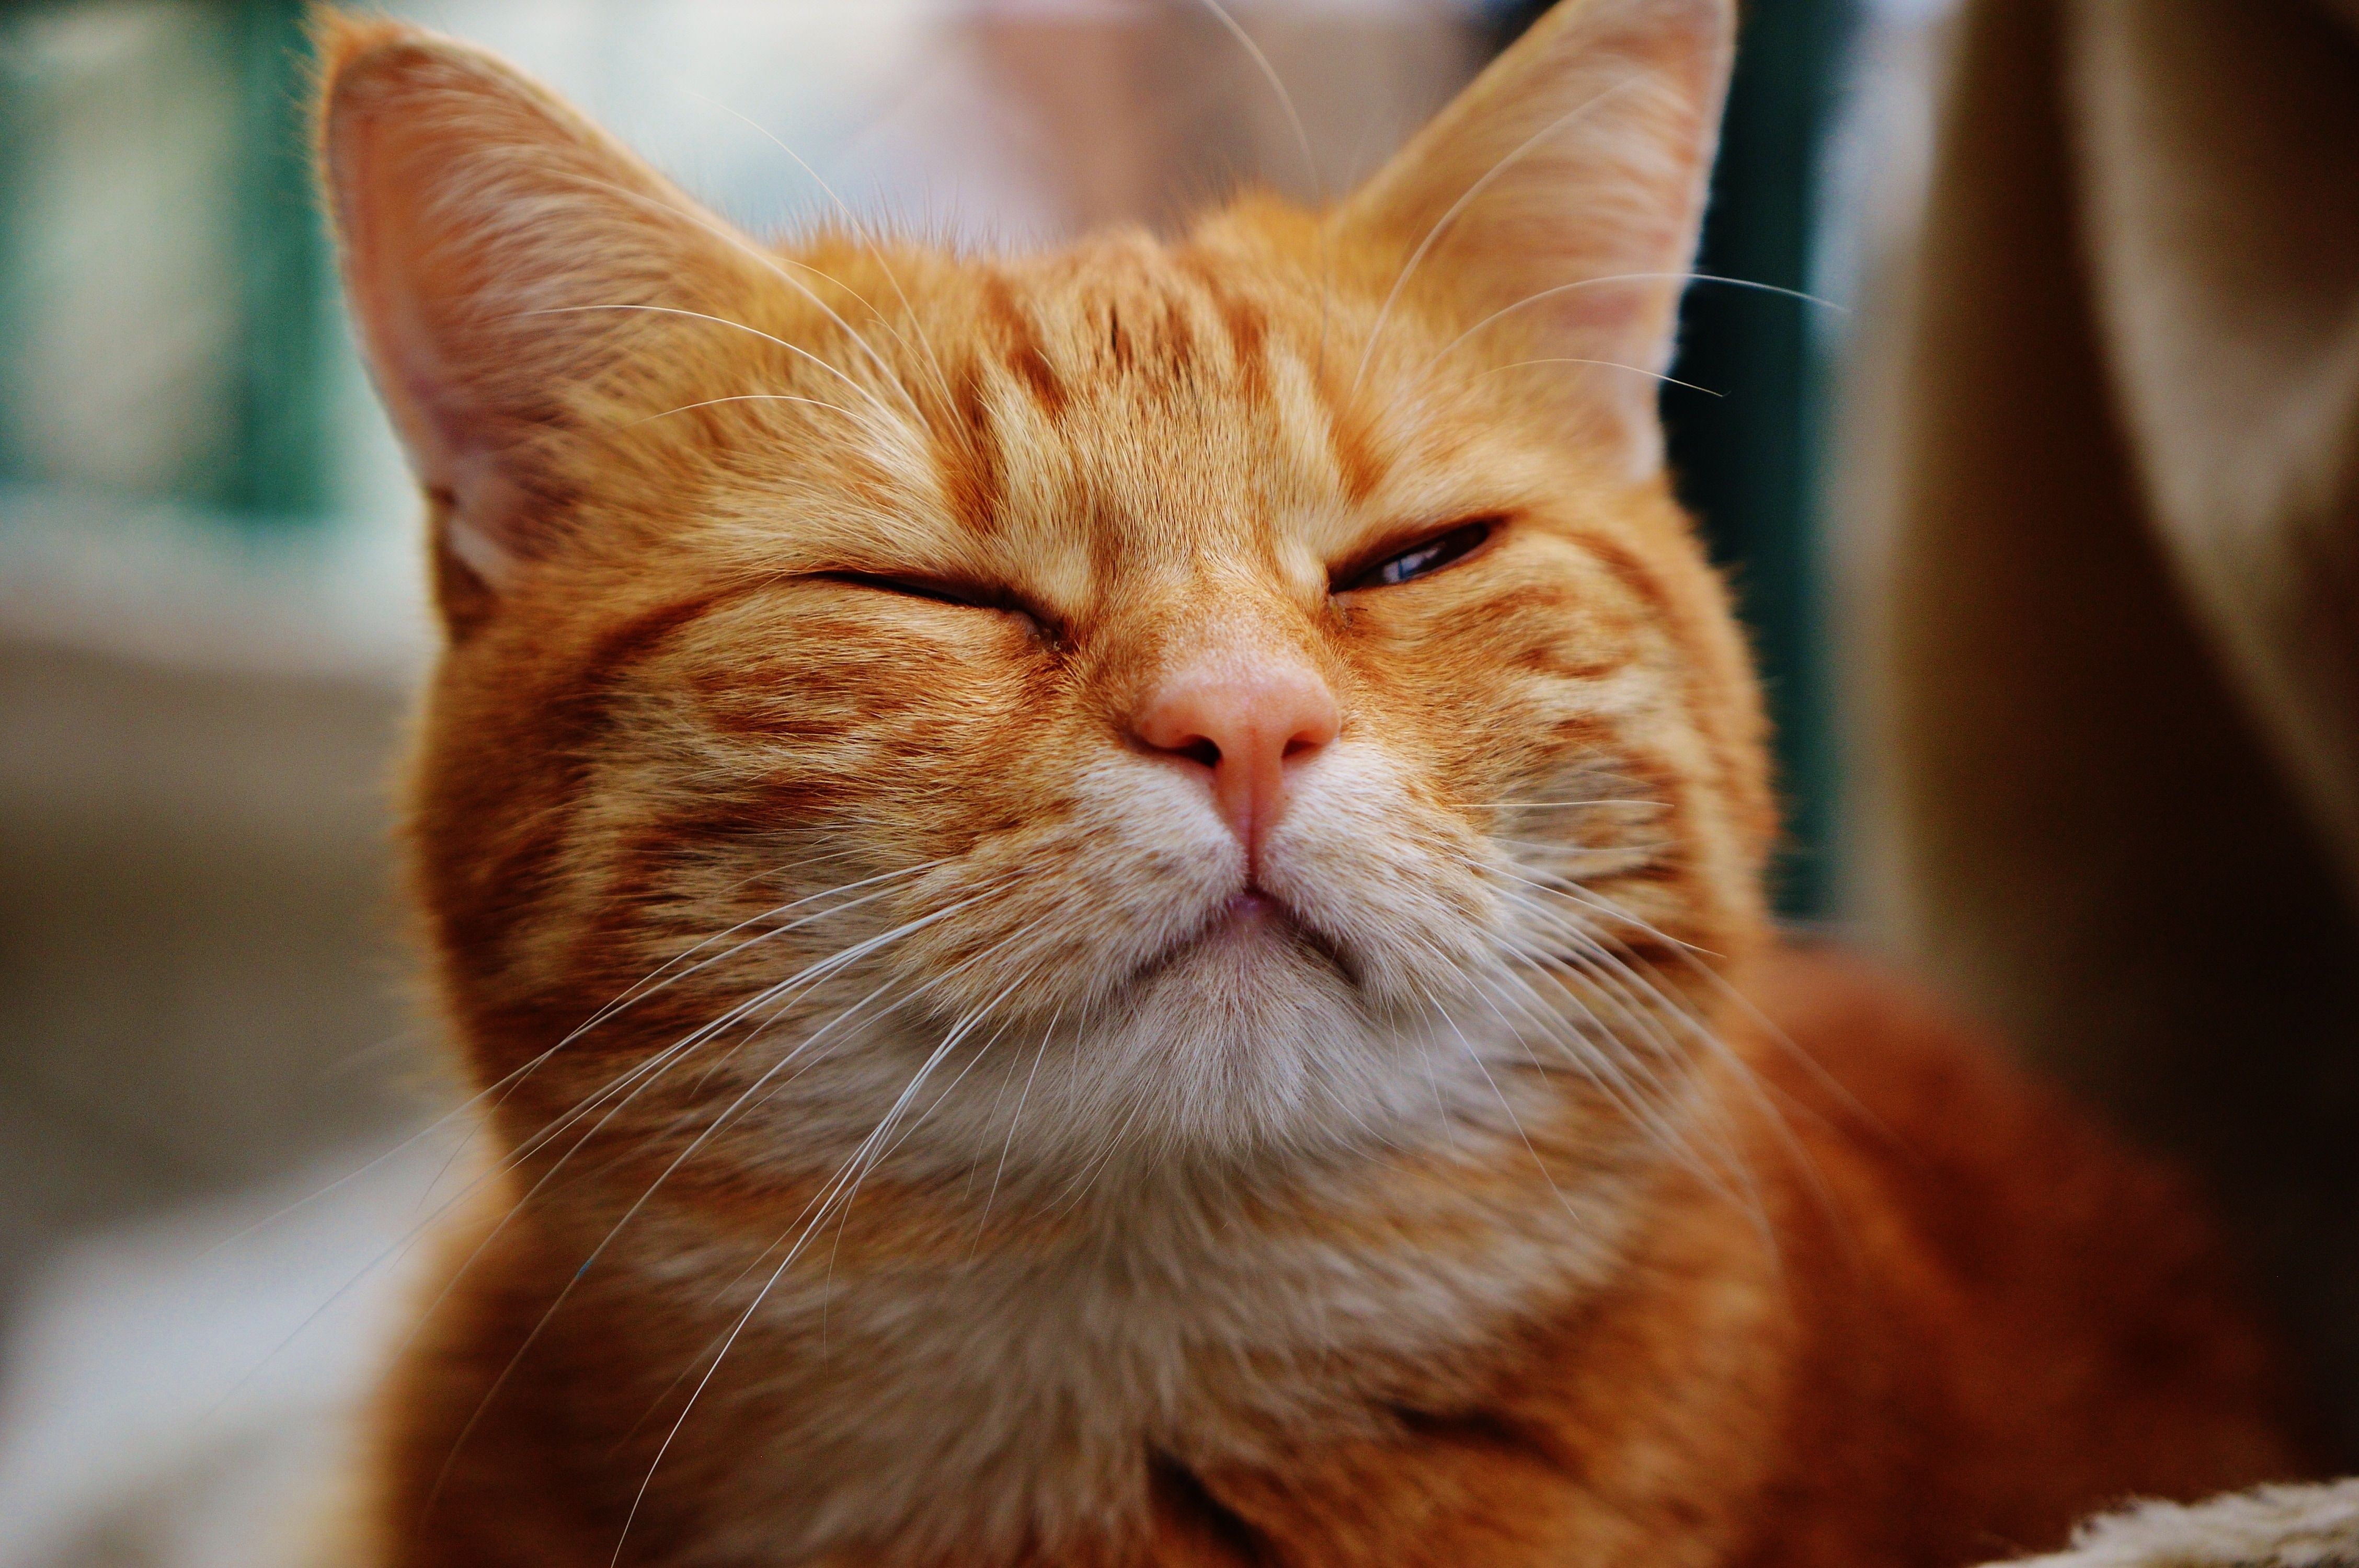 تصویر جالب از گربه نارنجی سفید ناز با چشم باز و بسته